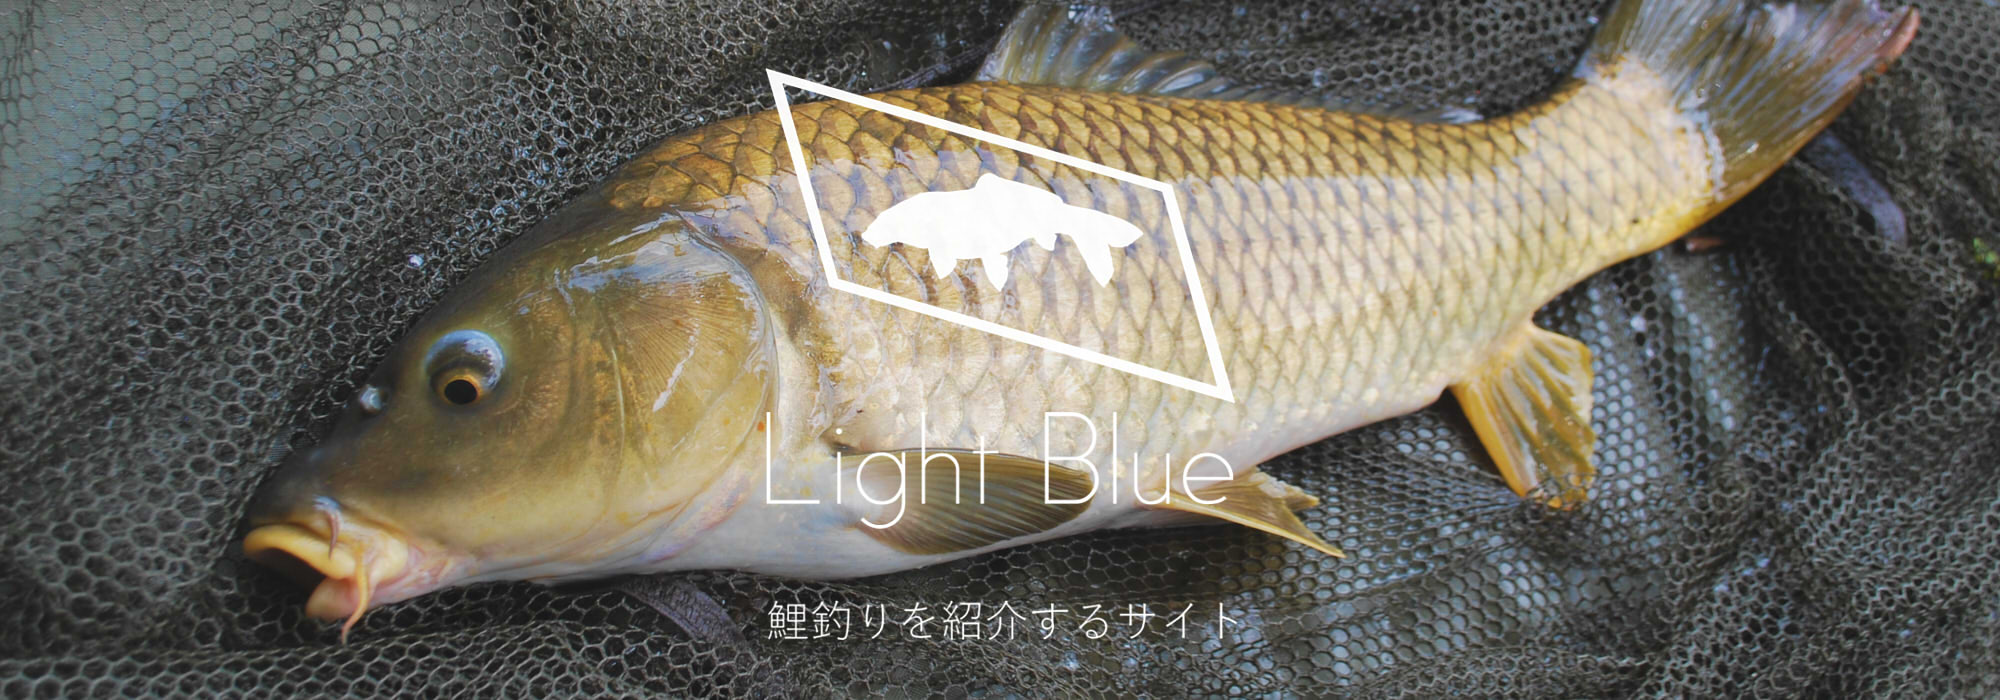 鯉釣りを紹介するサイトLightBlue